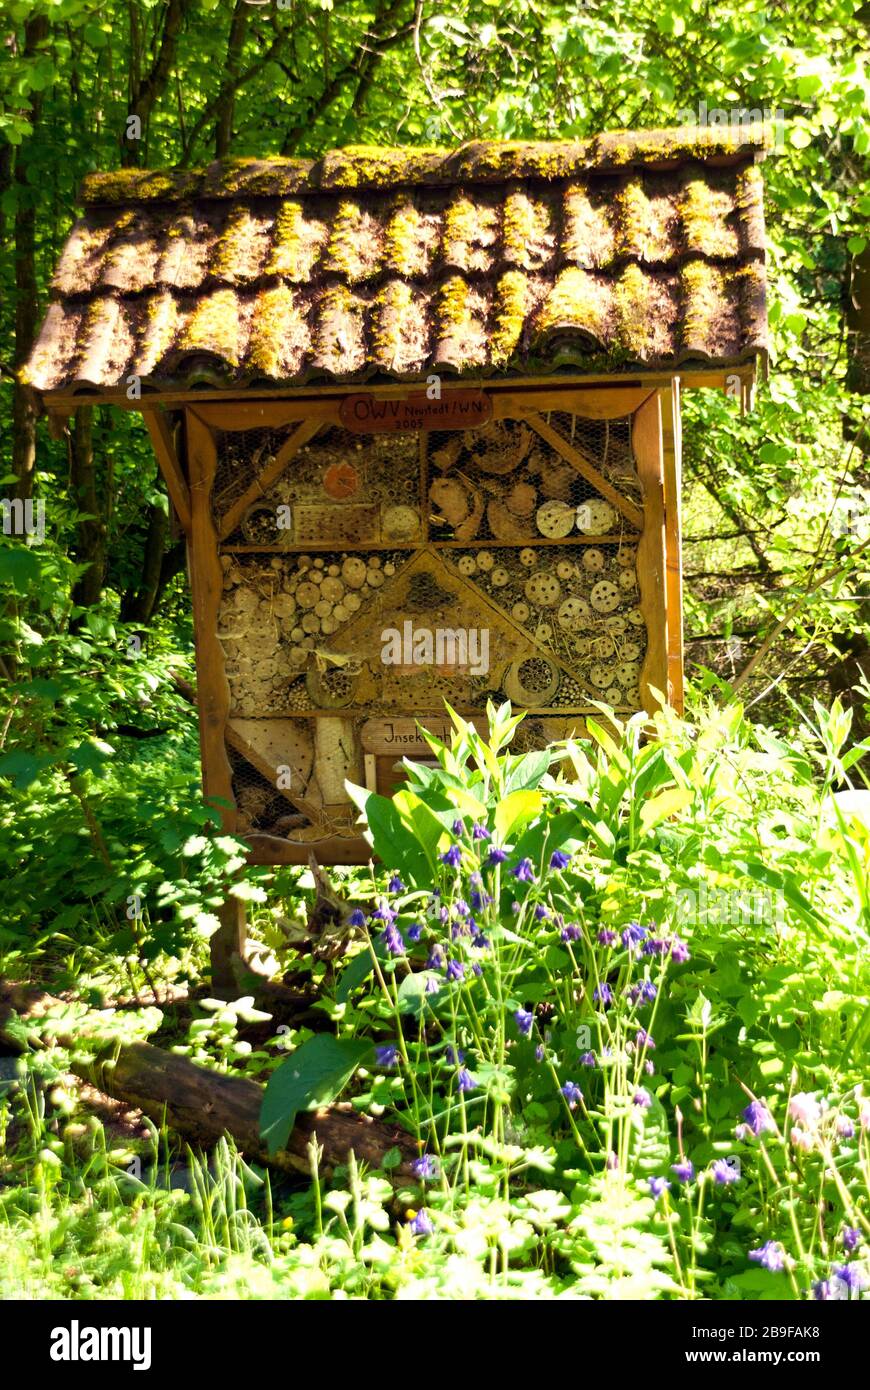 Insektenschutzhütte in einem Wald Stockfoto